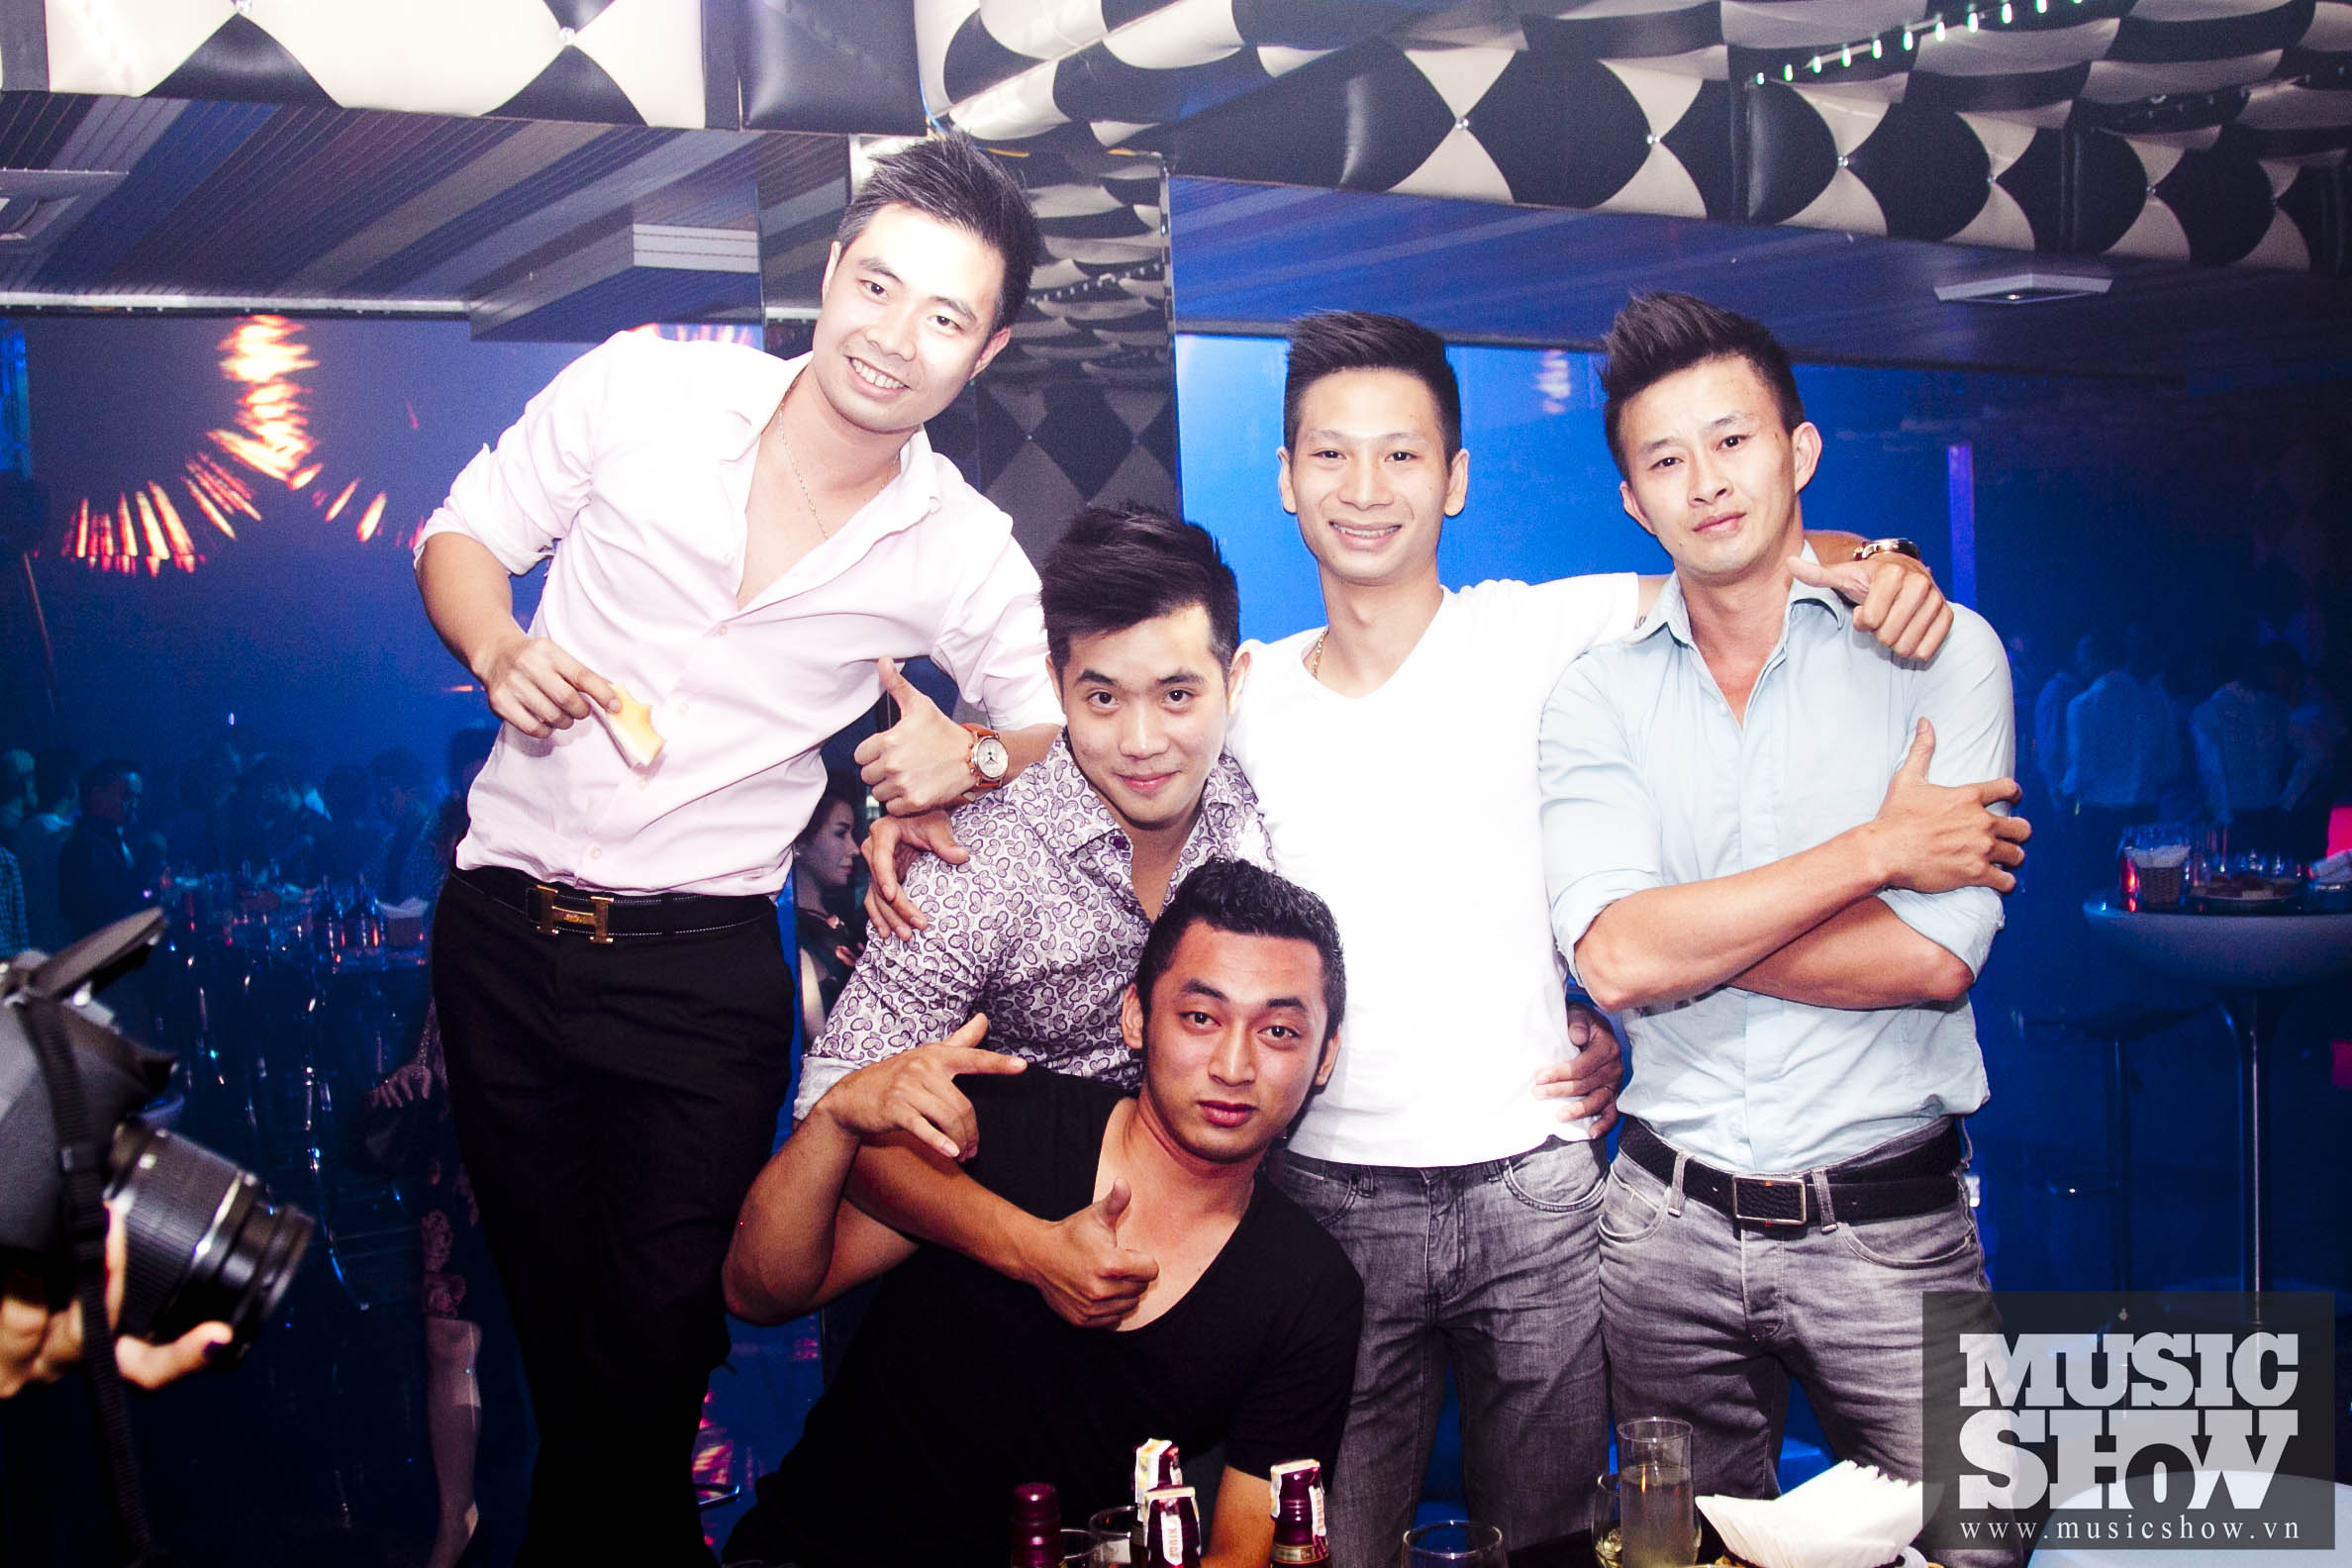 Cao Thái Sơn in Luxury Club 05/10/2013 3